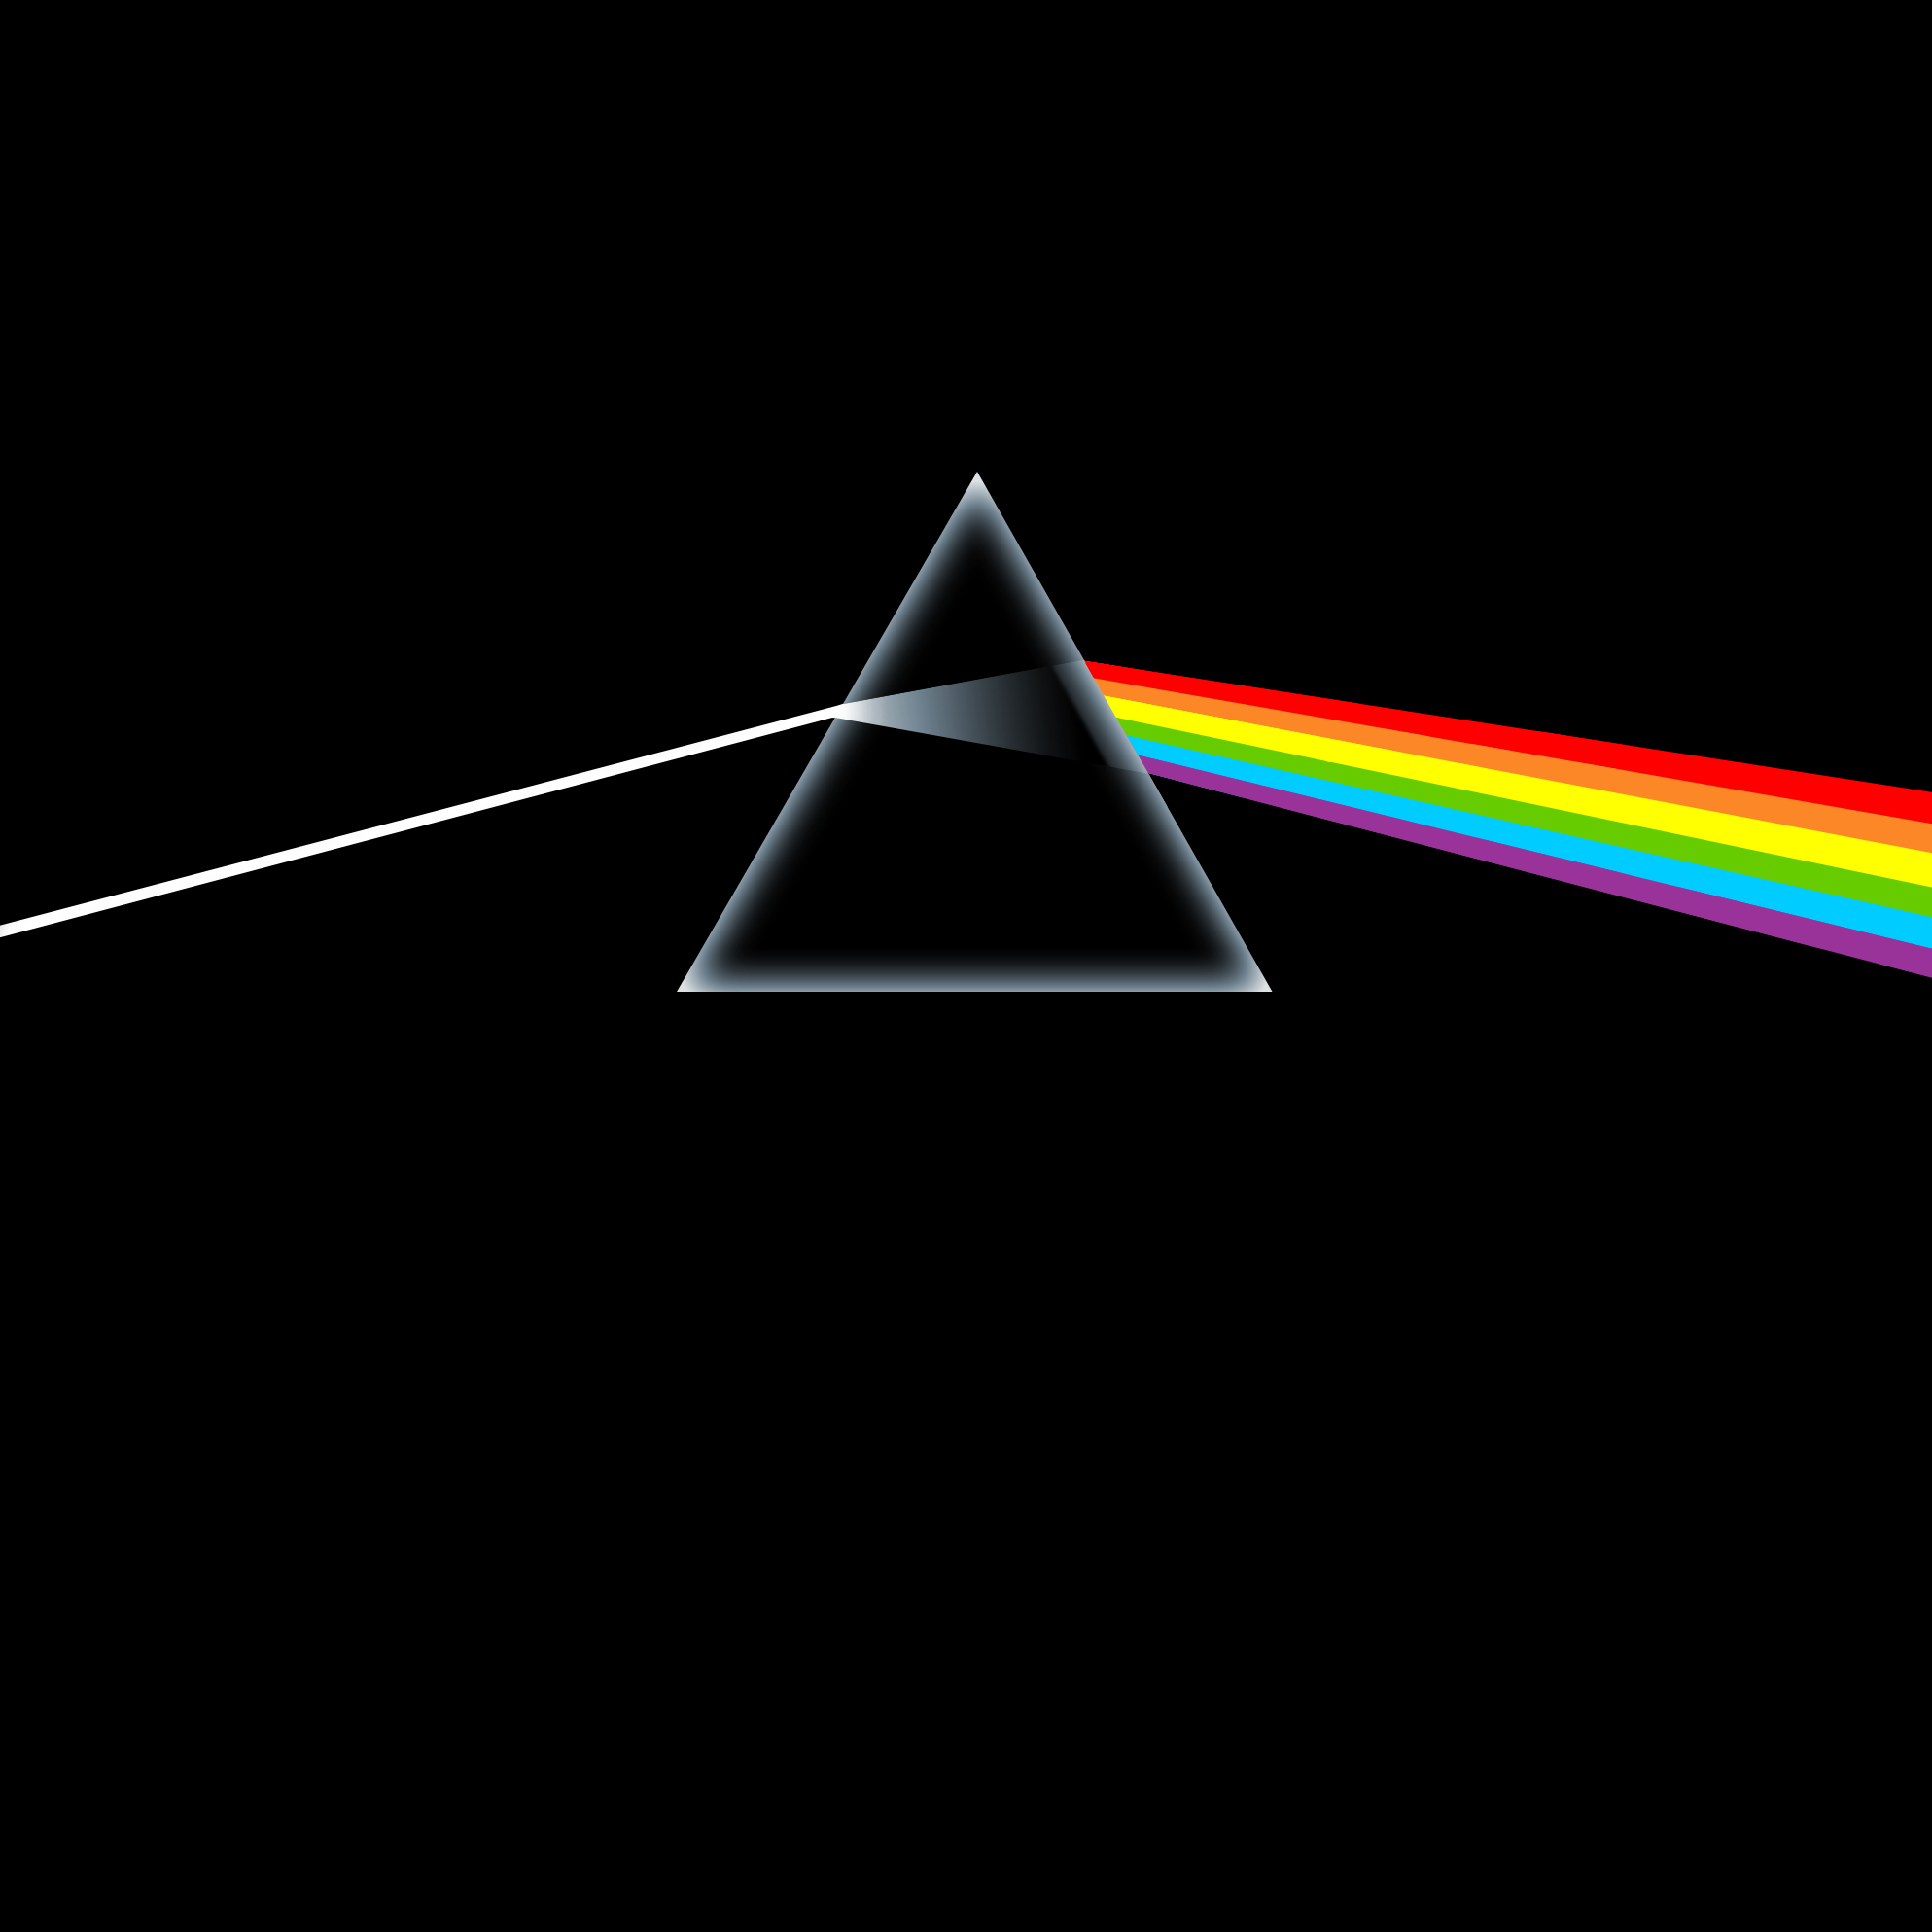 Die besten Pink Floyd-Hintergründe für den Telefonbildschirm